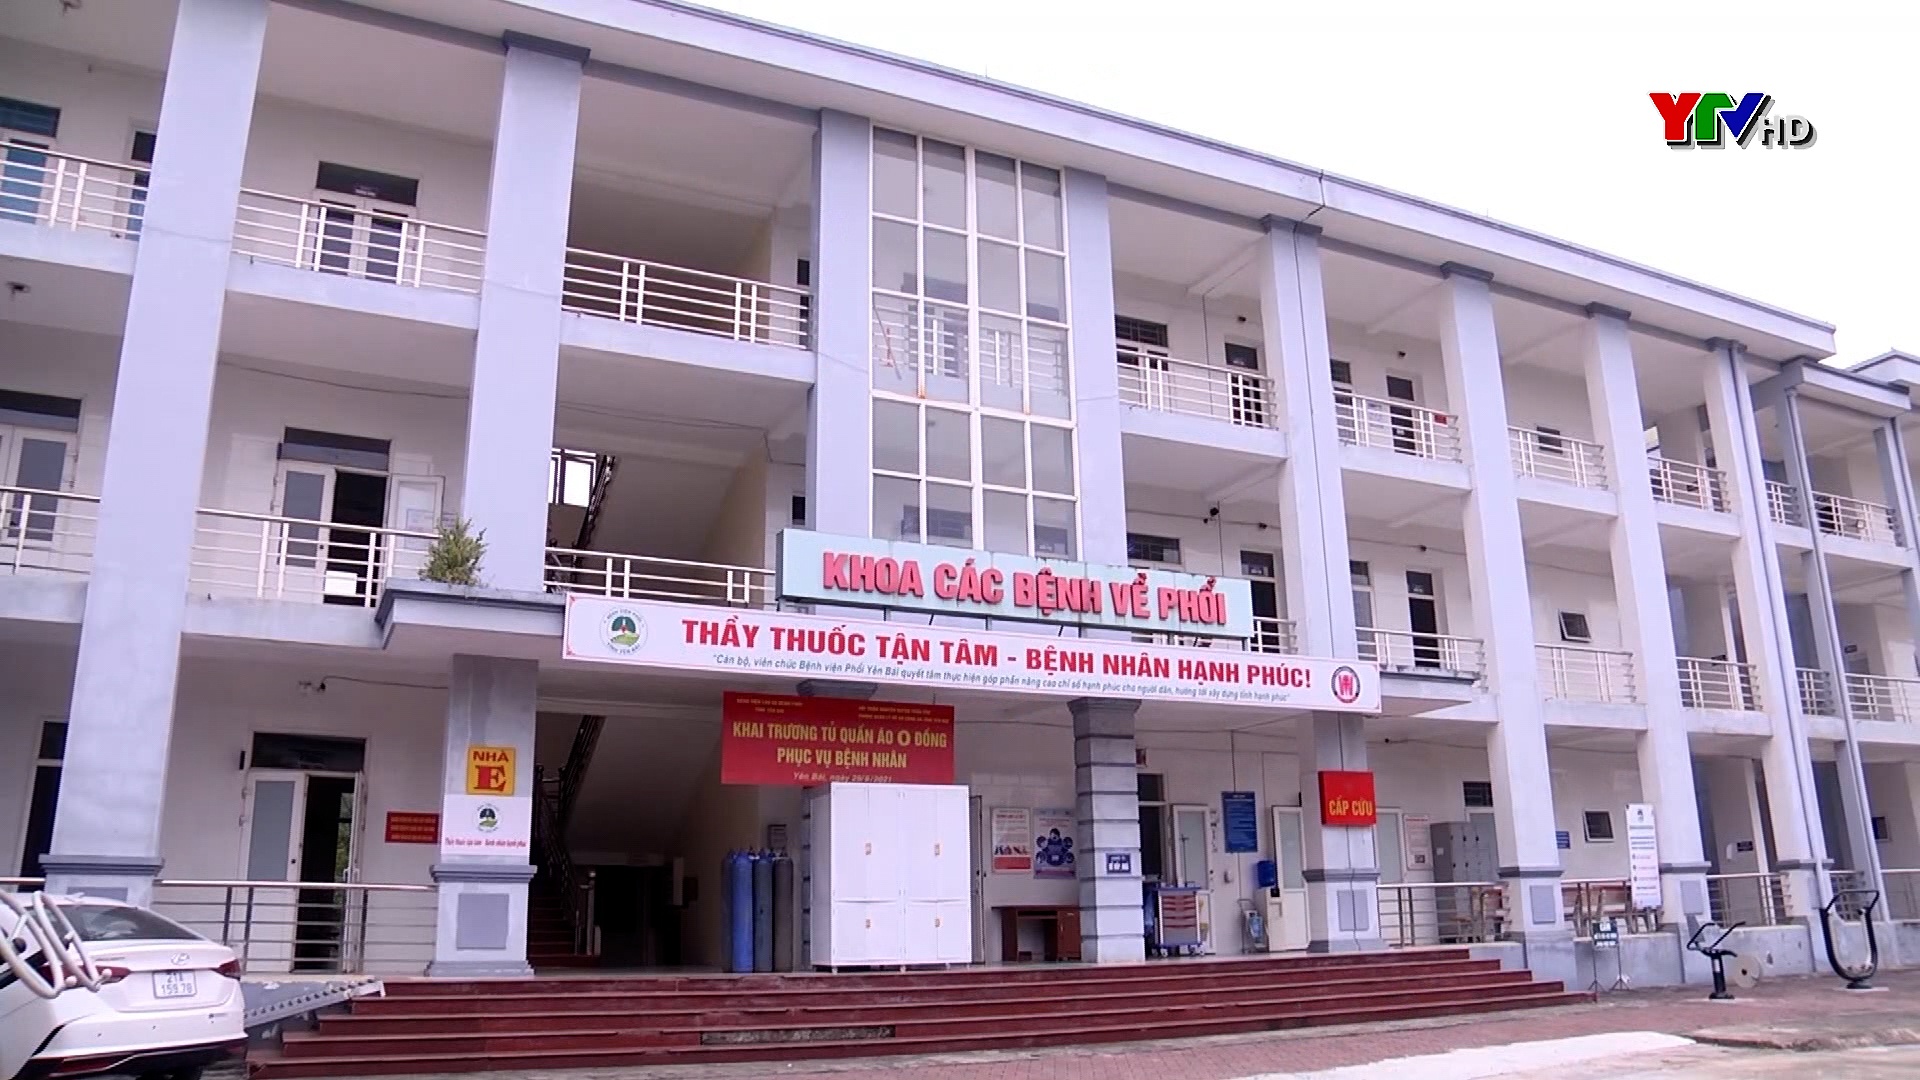 Bệnh viện Phổi tỉnh Yên Bái nỗ lực triển khai bệnh án điện tử